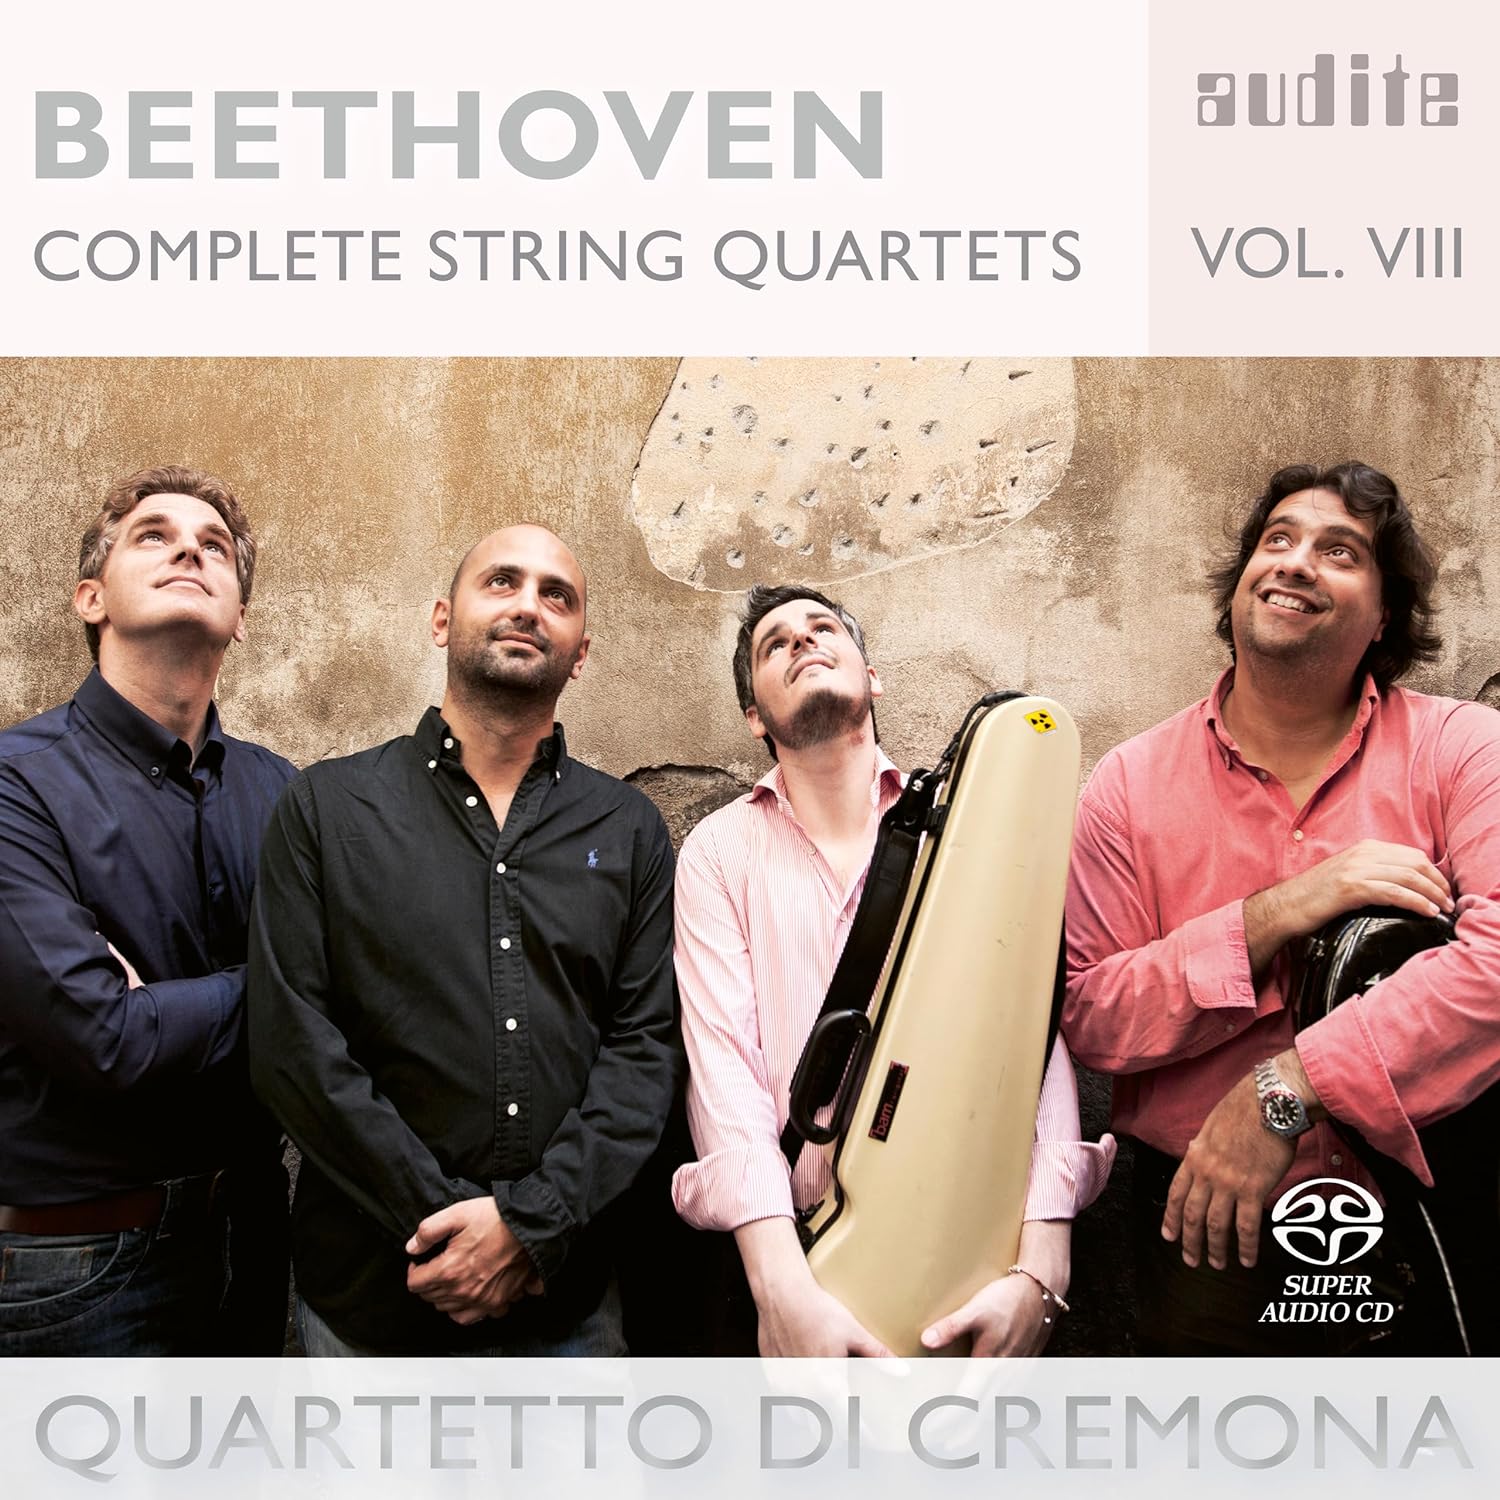 Beethoven Complete String Quartets Vol. VIII